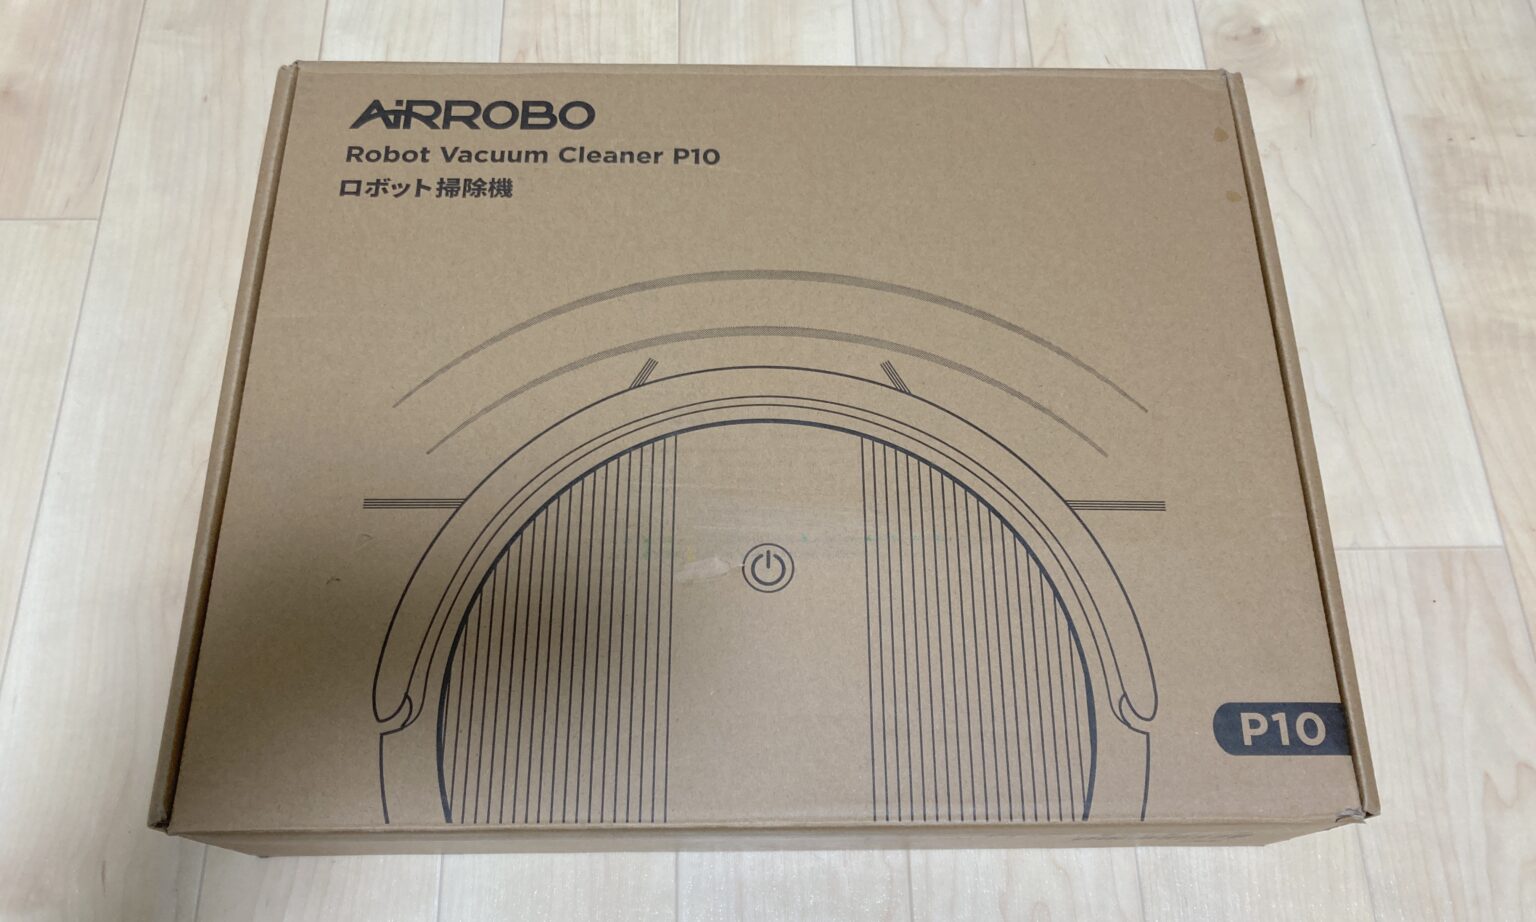 【使ってみた】ロボット掃除機「AIRROBO P10」をレビューします【1万円台で購入可能】 | くれとむBlog